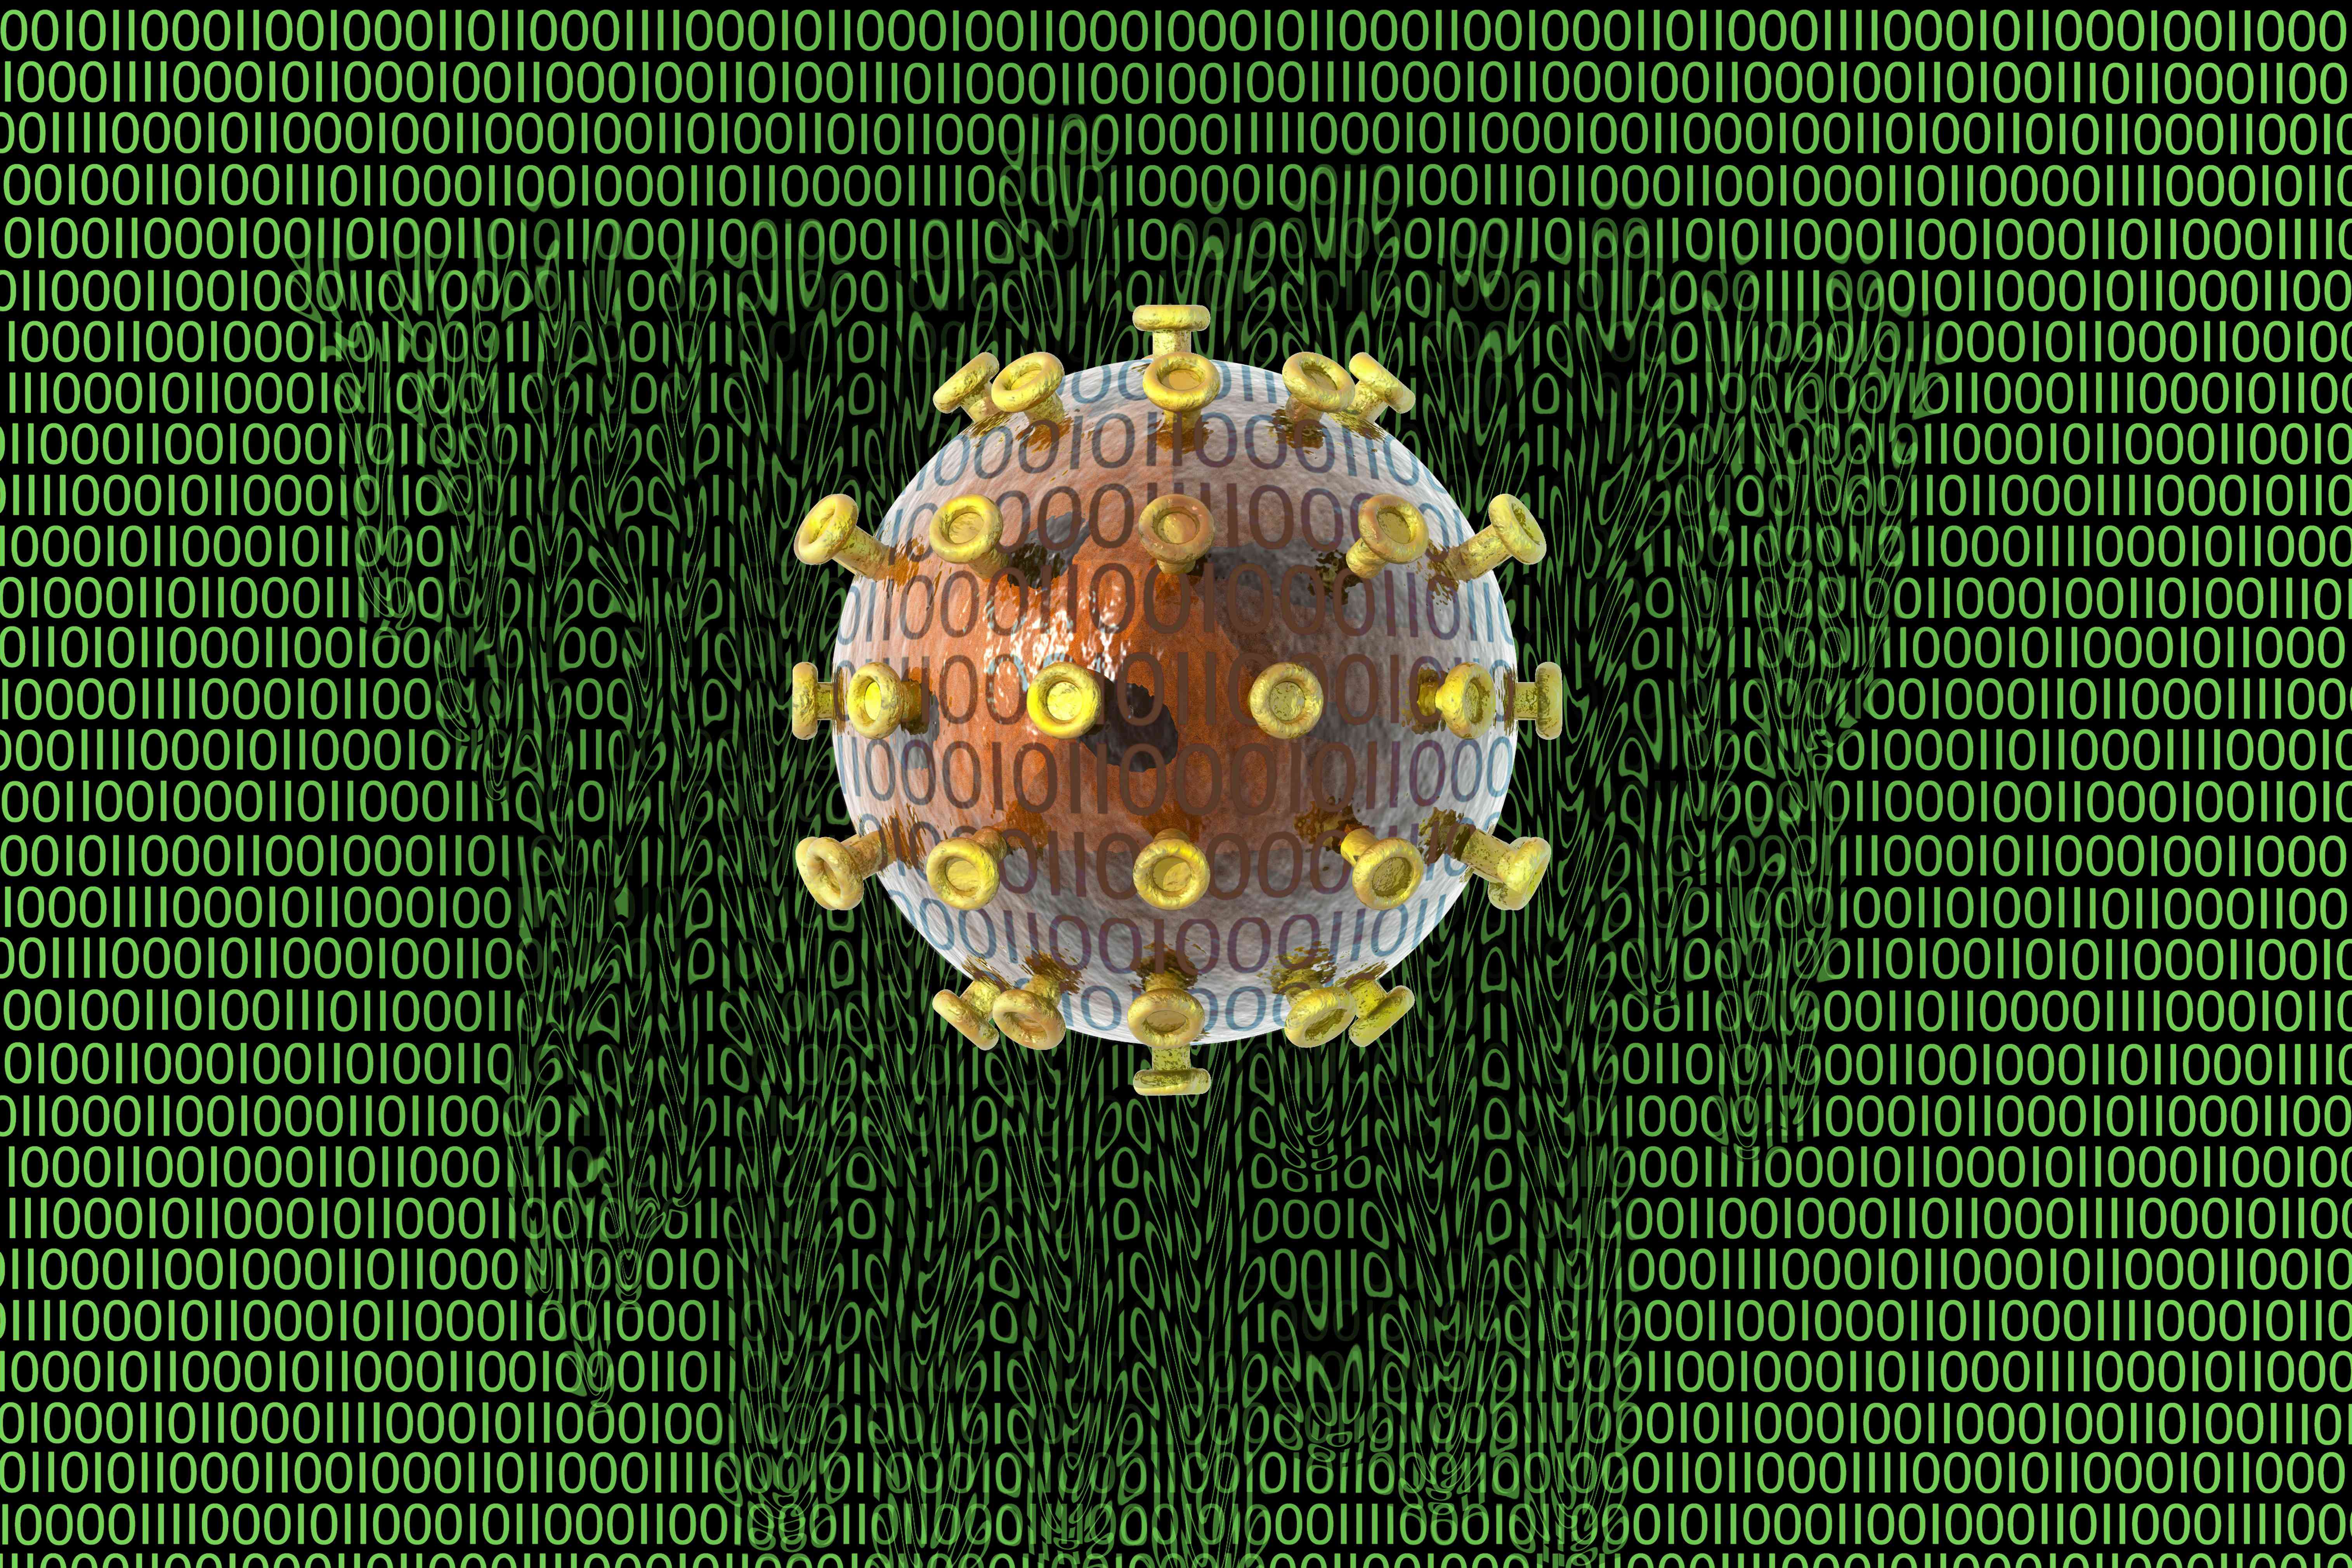 Ilustração de um colapso digital causado por uma infecção de vírus, mostrado por uma bola de vírus em um fundo verde de uns e zeros